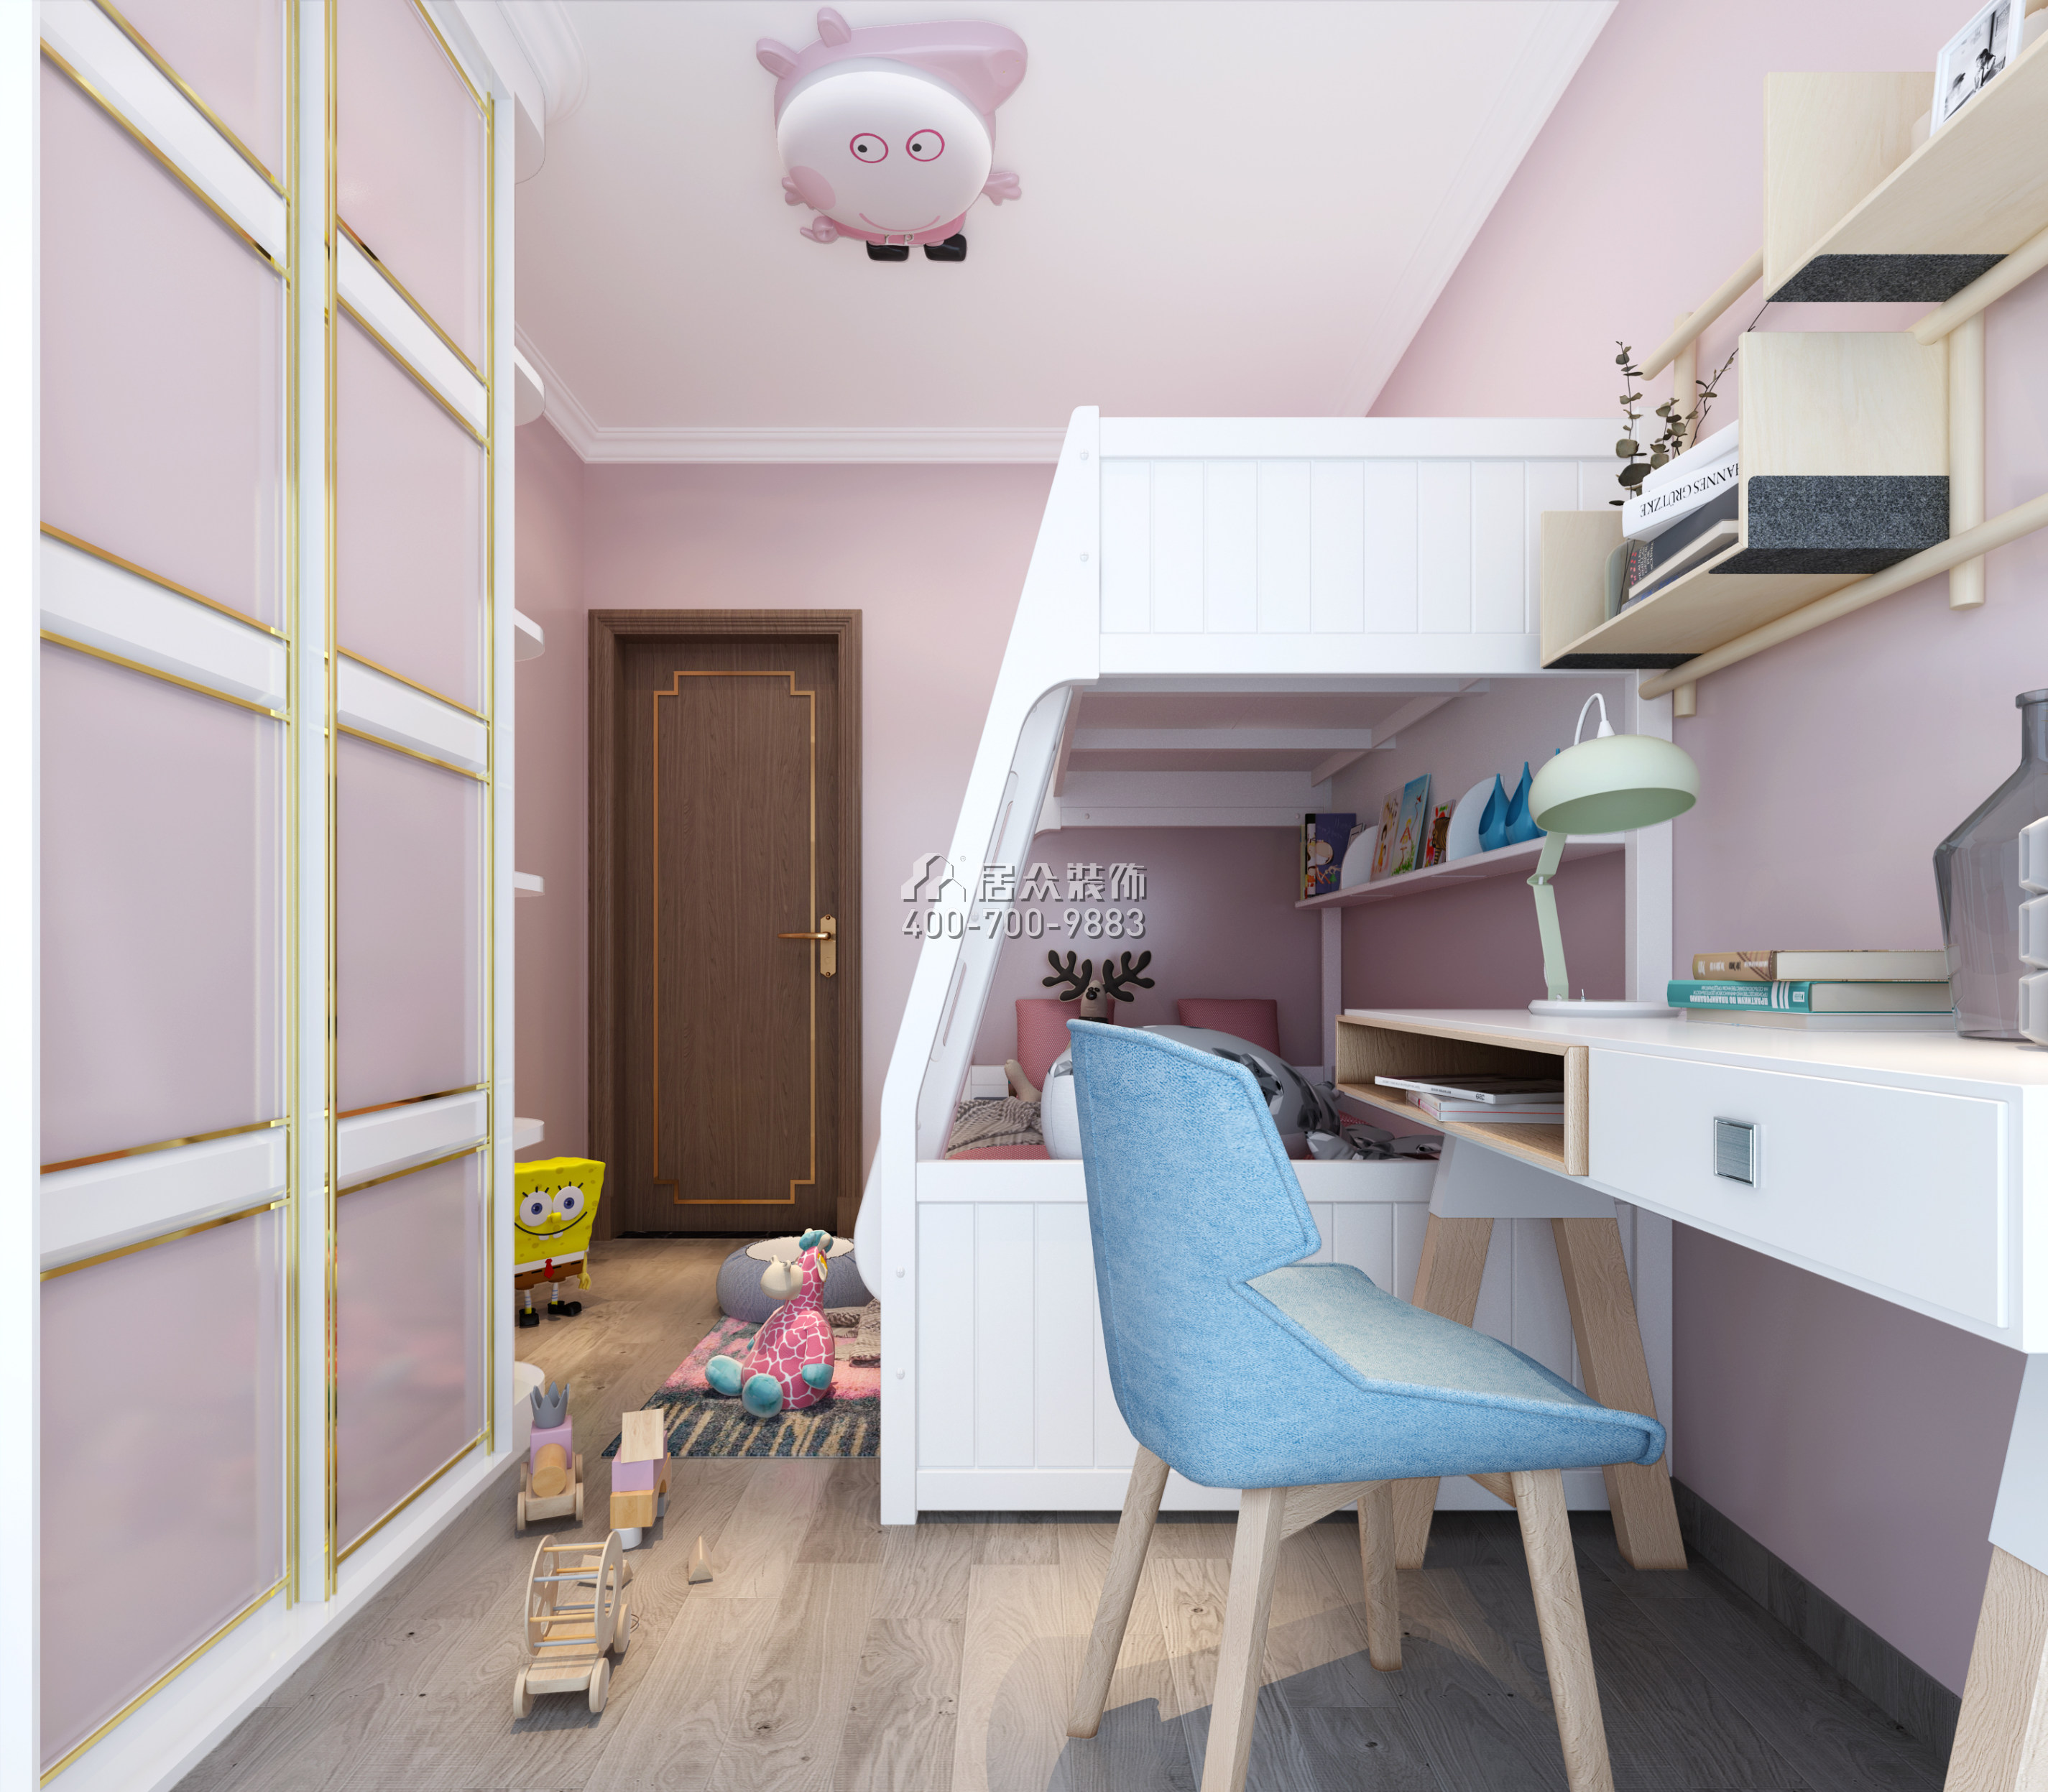 联投东方华府二期105平方米中式风格平层户型儿童房装修效果图